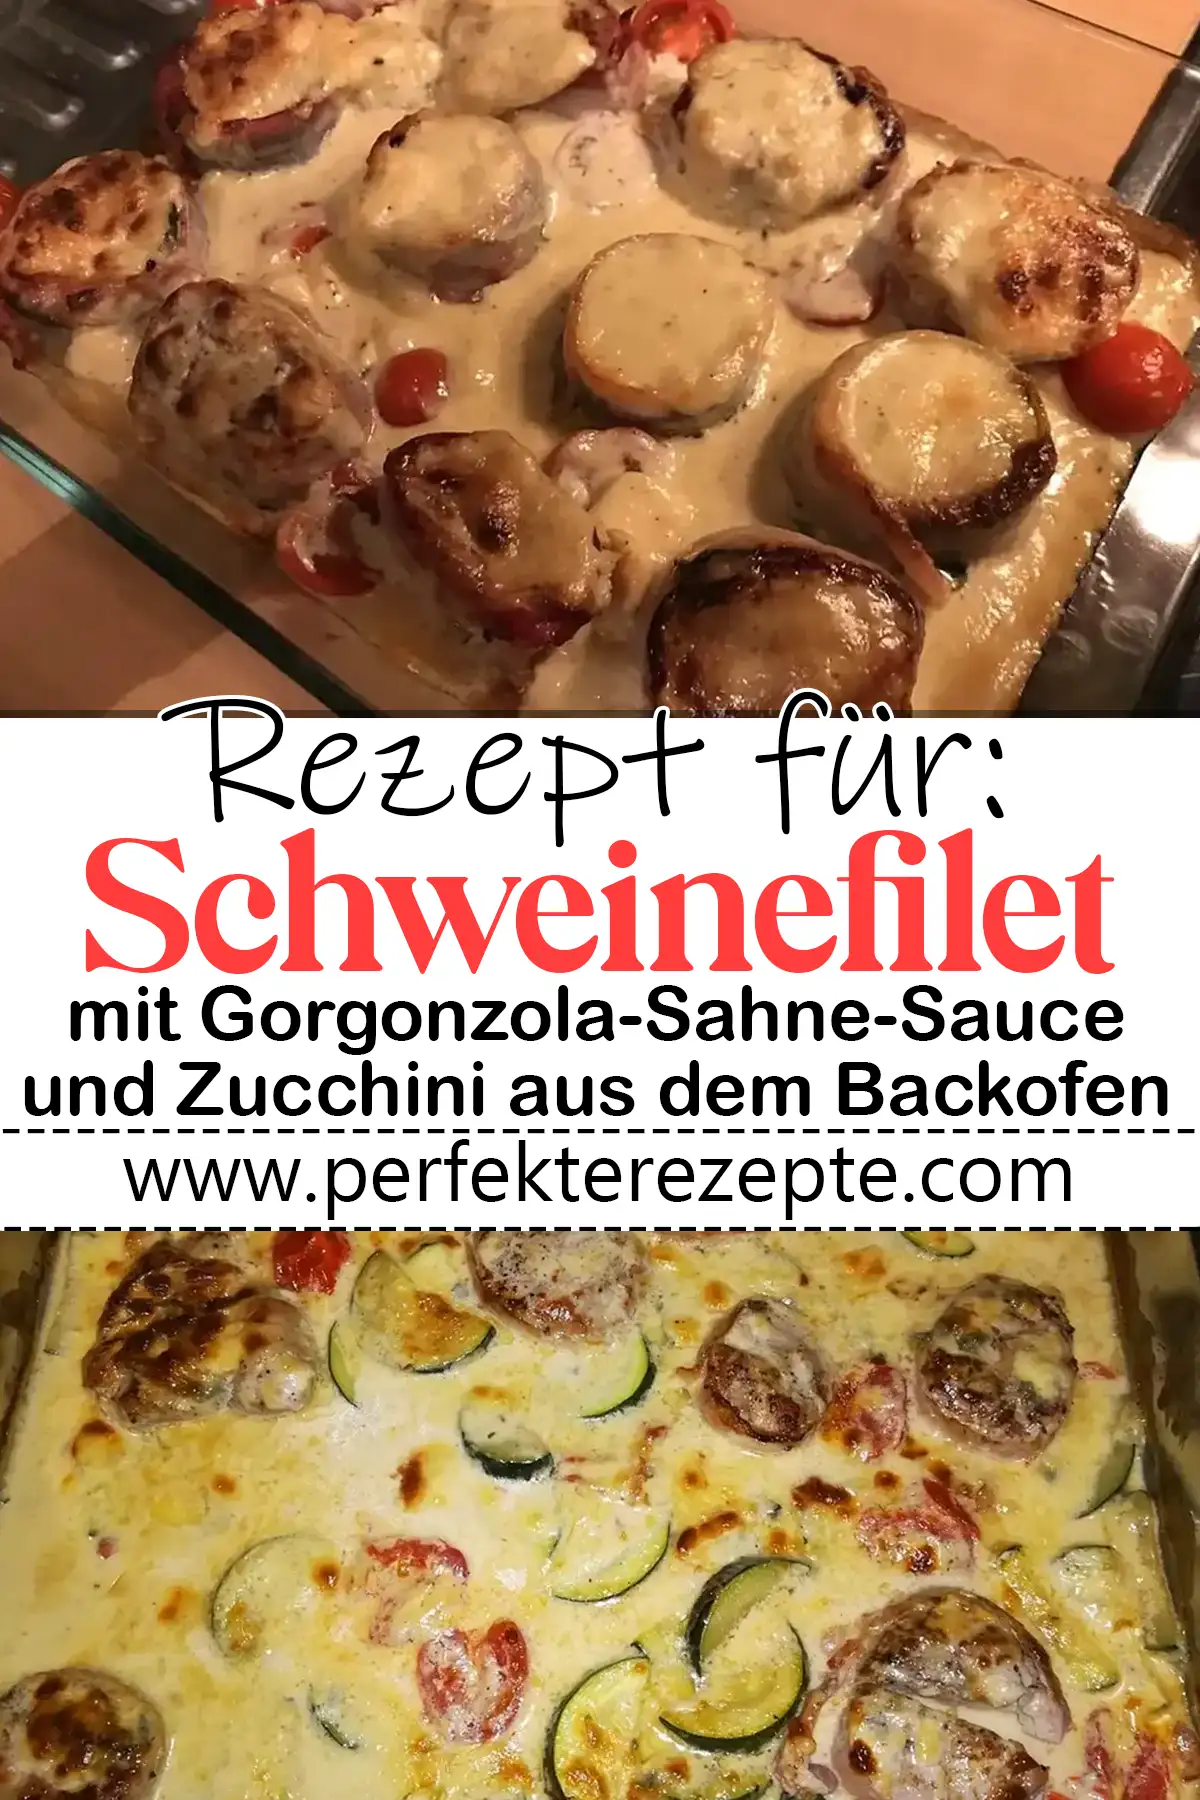 Schweinefilet mit Gorgonzola-Sahne-Sauce und Zucchini aus dem Backofen